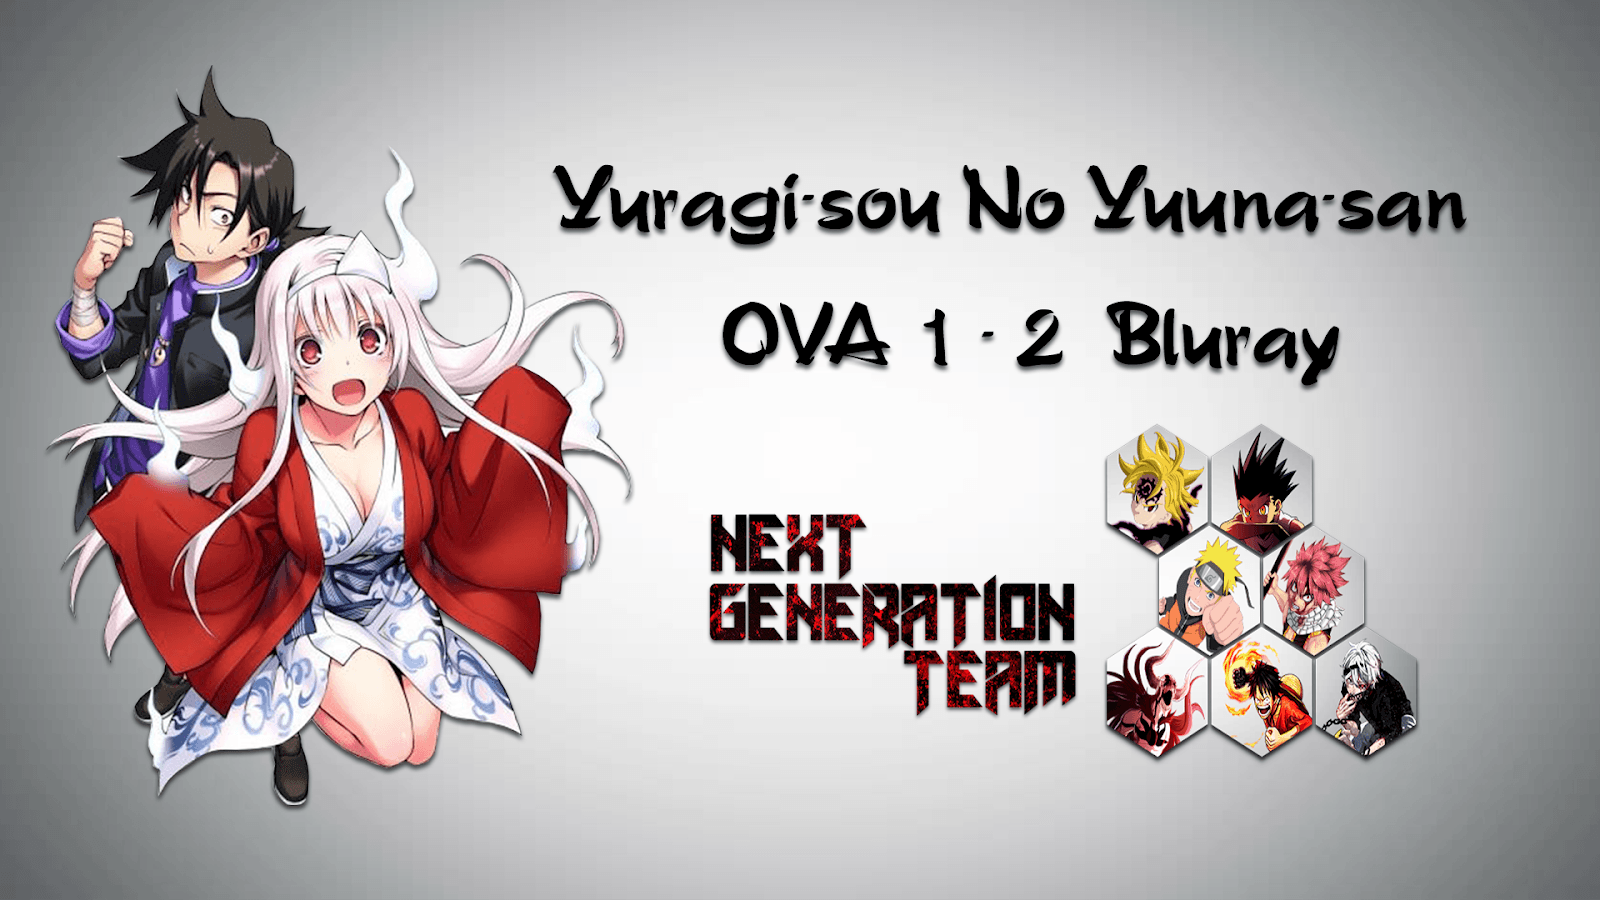 yuuna yunohara/yuragi-sou no yuuna-san icons